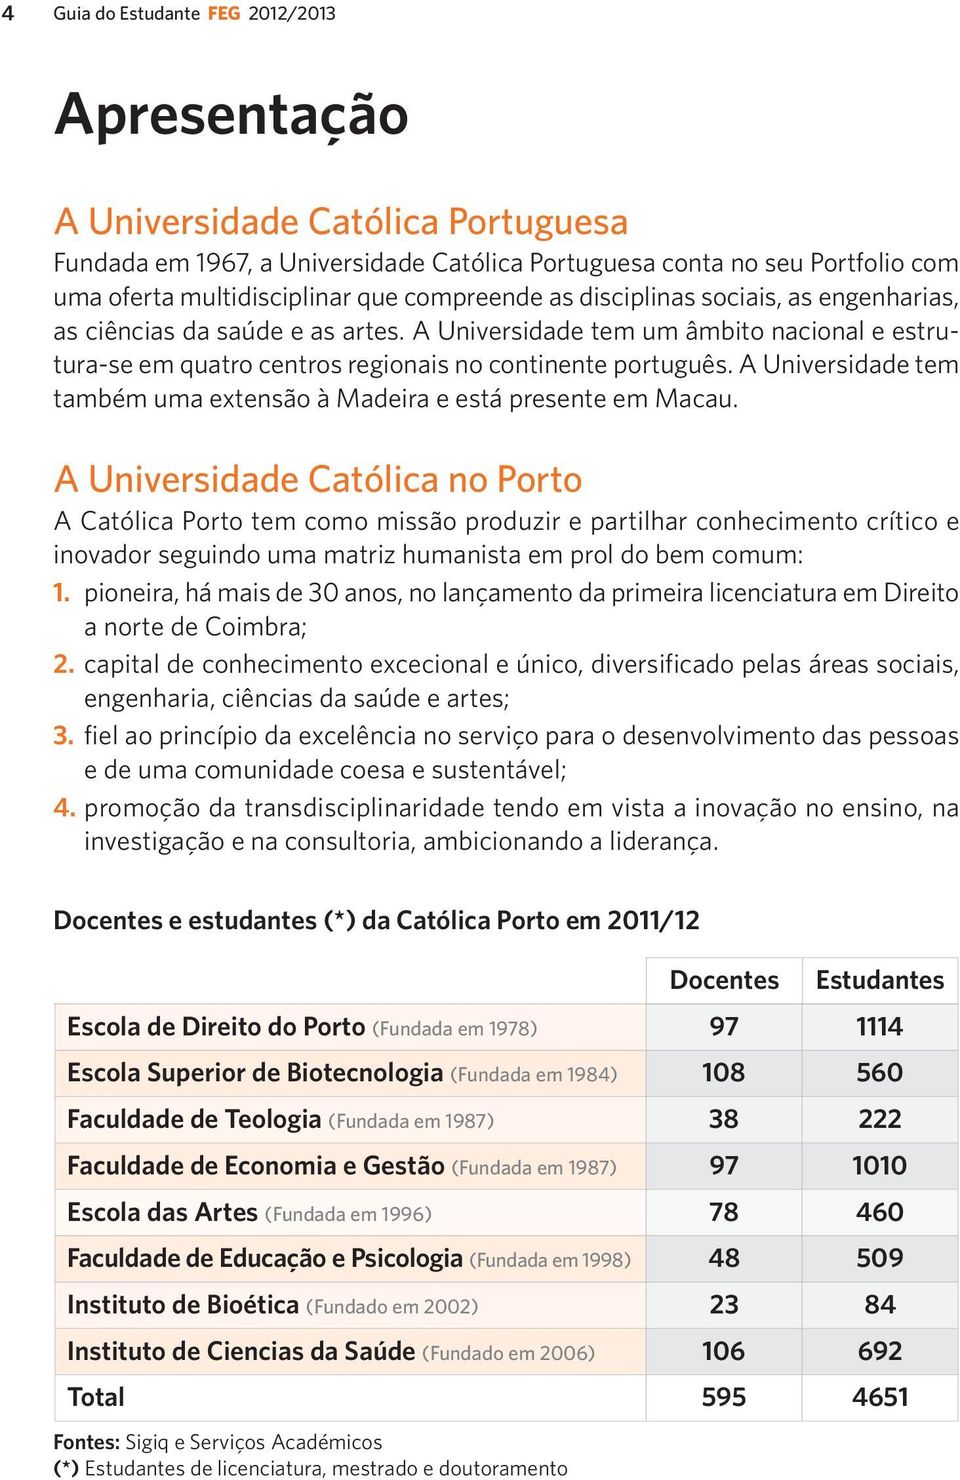 católica porto universidade católica portuguesa Guia do Estudante Faculdade  de Economia e Gestão 2012/2013 1º CICLO - PDF Free Download